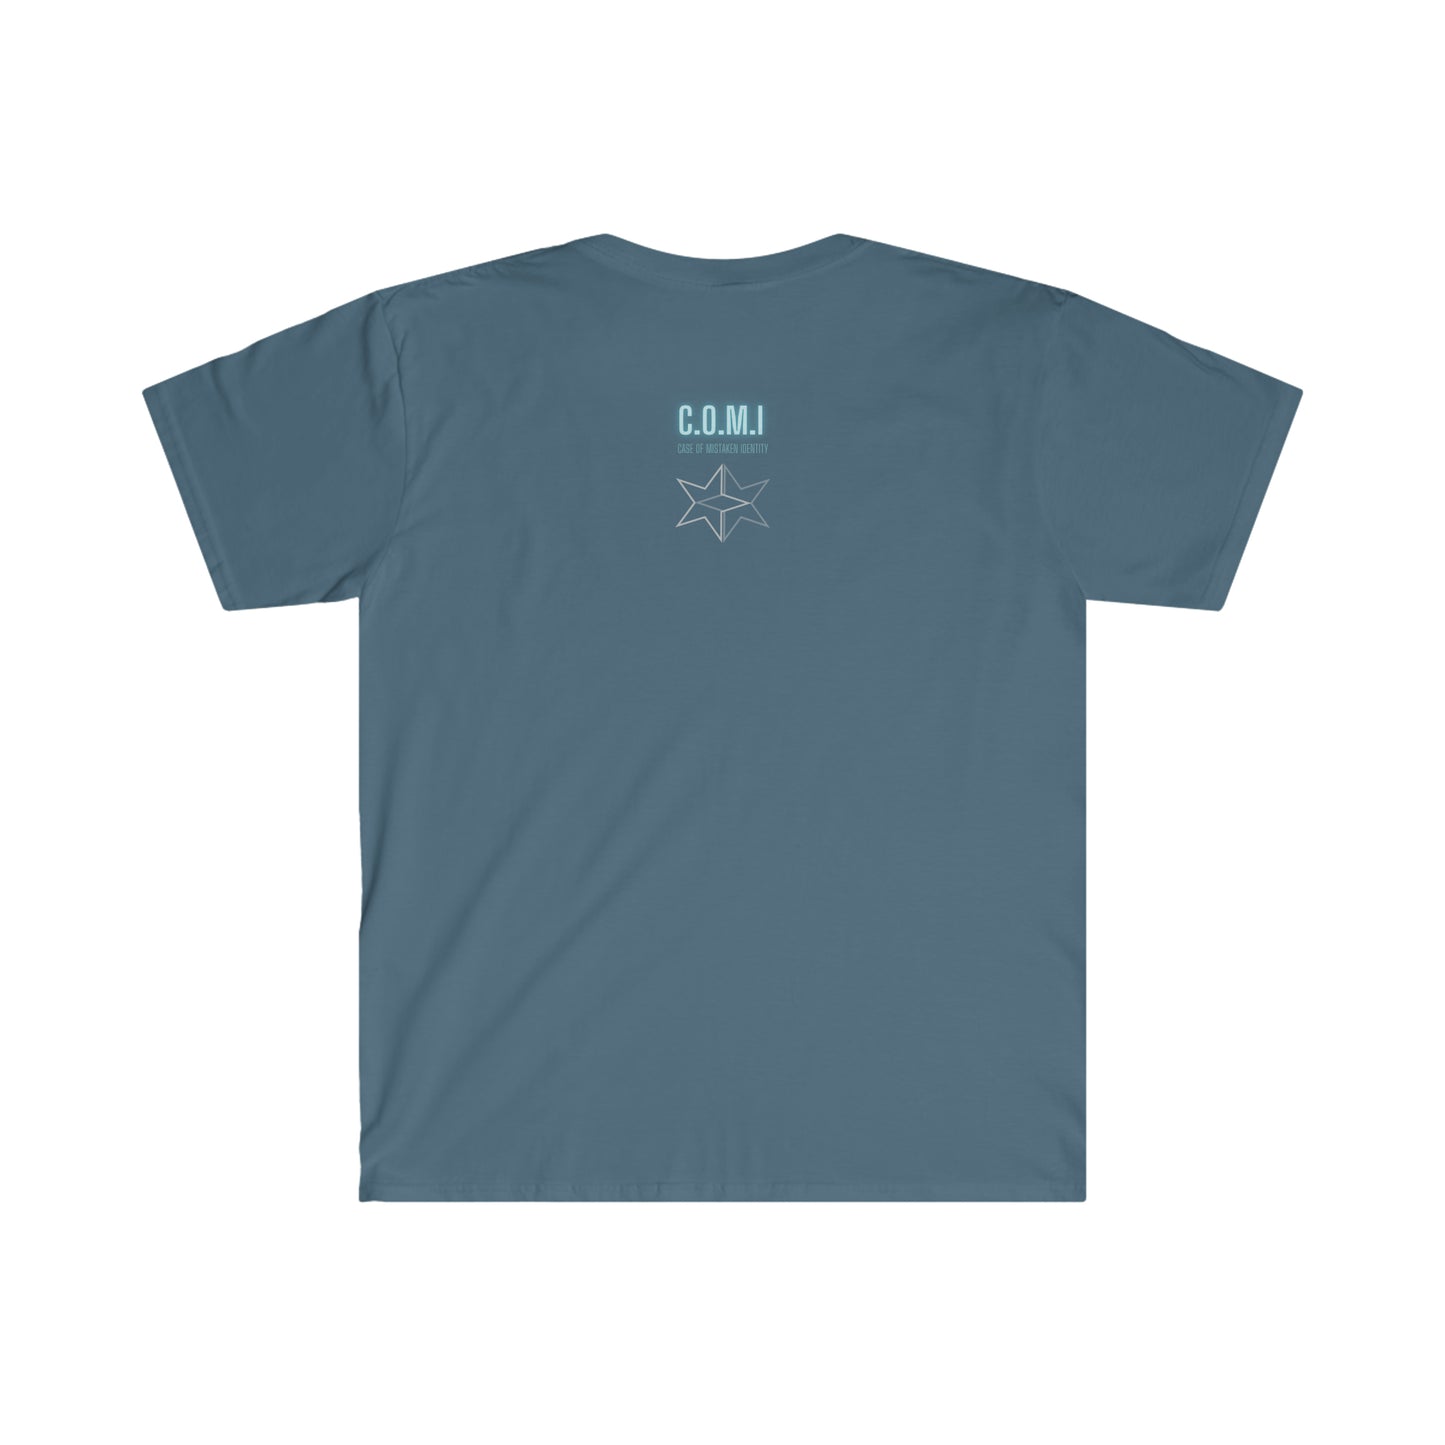 JDM Racer - Unisex Softstyle T-Shirt